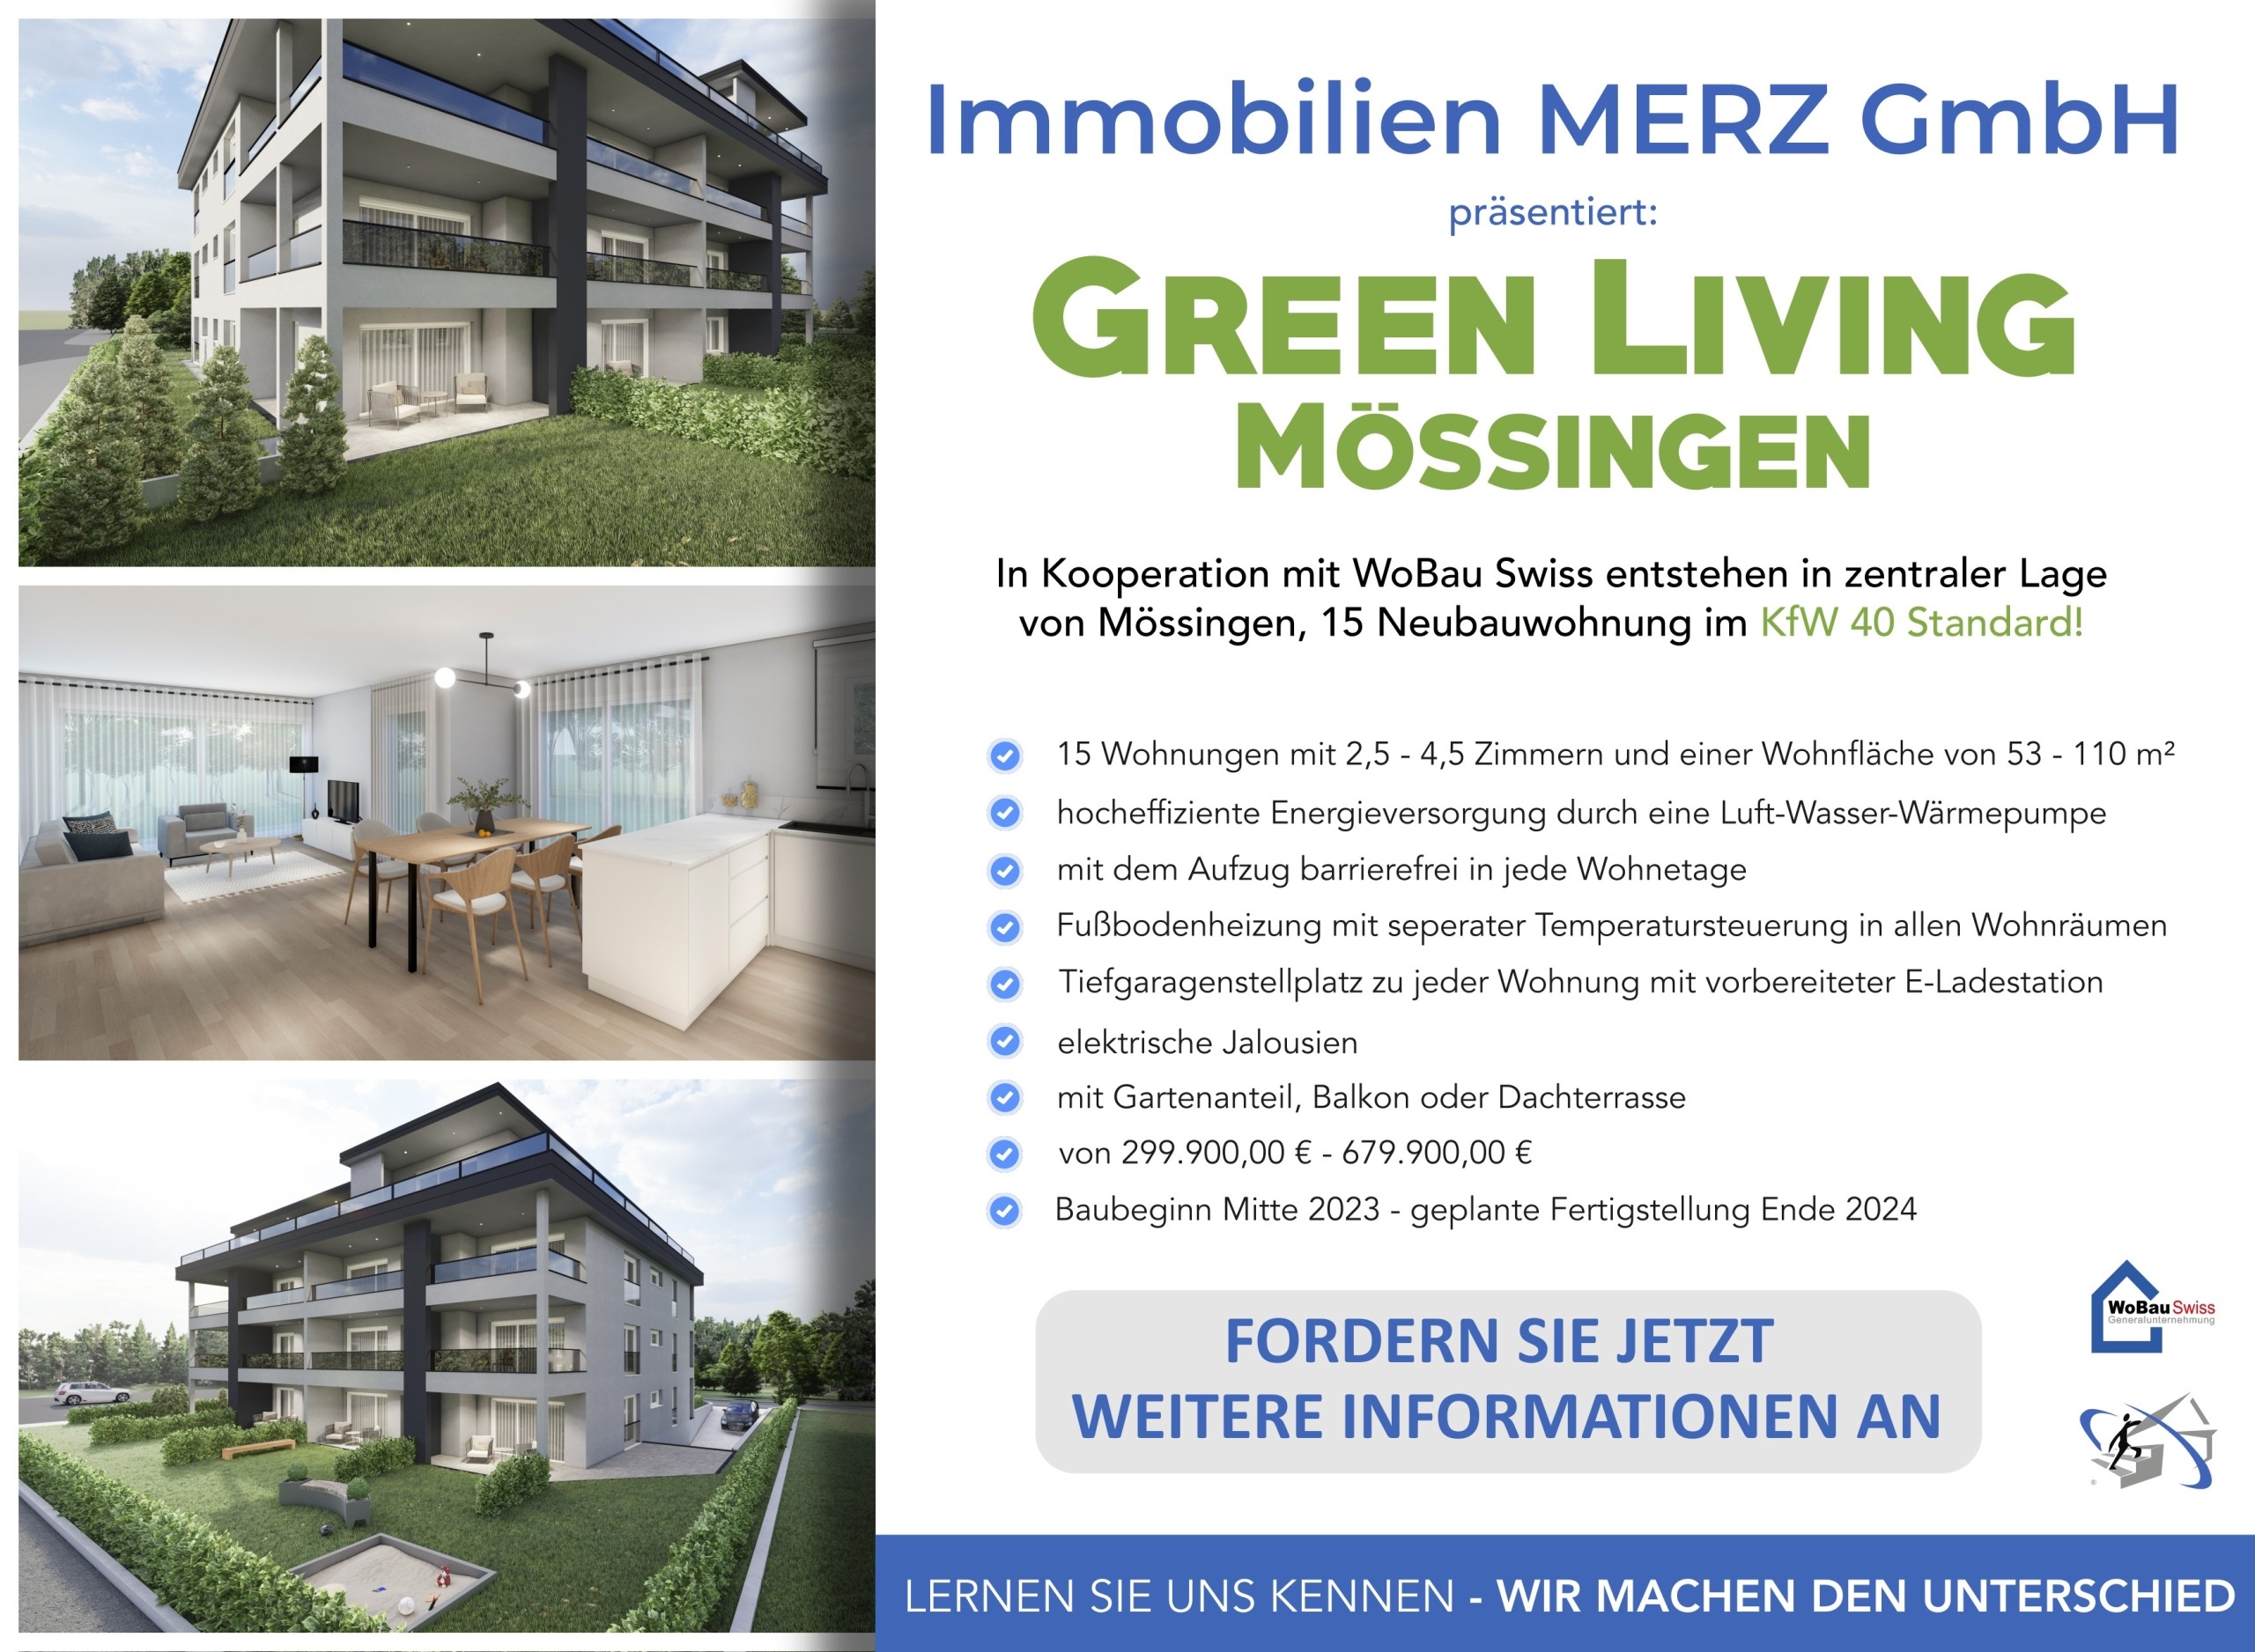 Immobilien MERZ GmbH